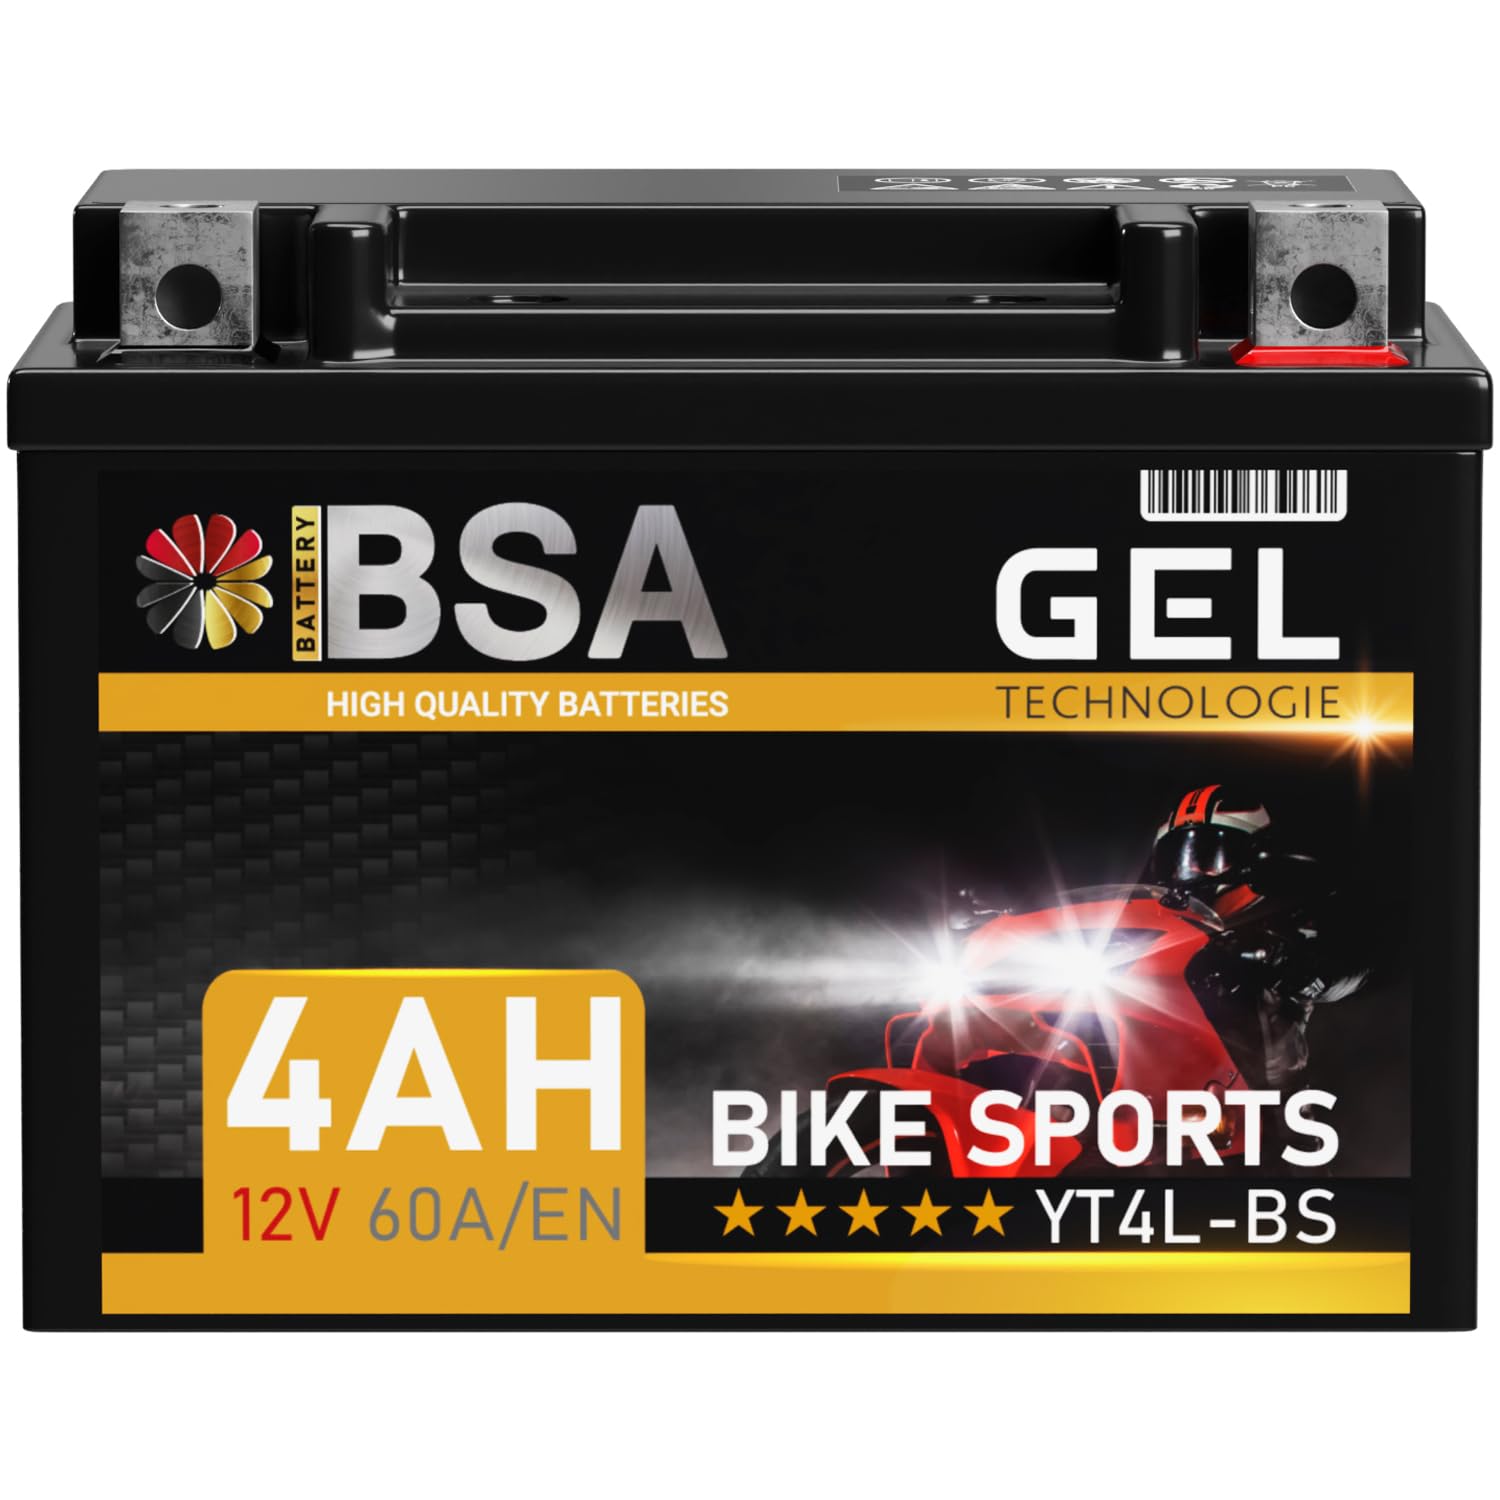 BSA YT4L-BS GEL Roller Batterie 12V 4Ah 60A/EN Motorradbatterie doppelte Lebensdauer entspricht 50314 YTX4L-LB CTX4L-BS auslaufsicher wartungsfrei von BSA BATTERY HIGH QUALITY BATTERIES